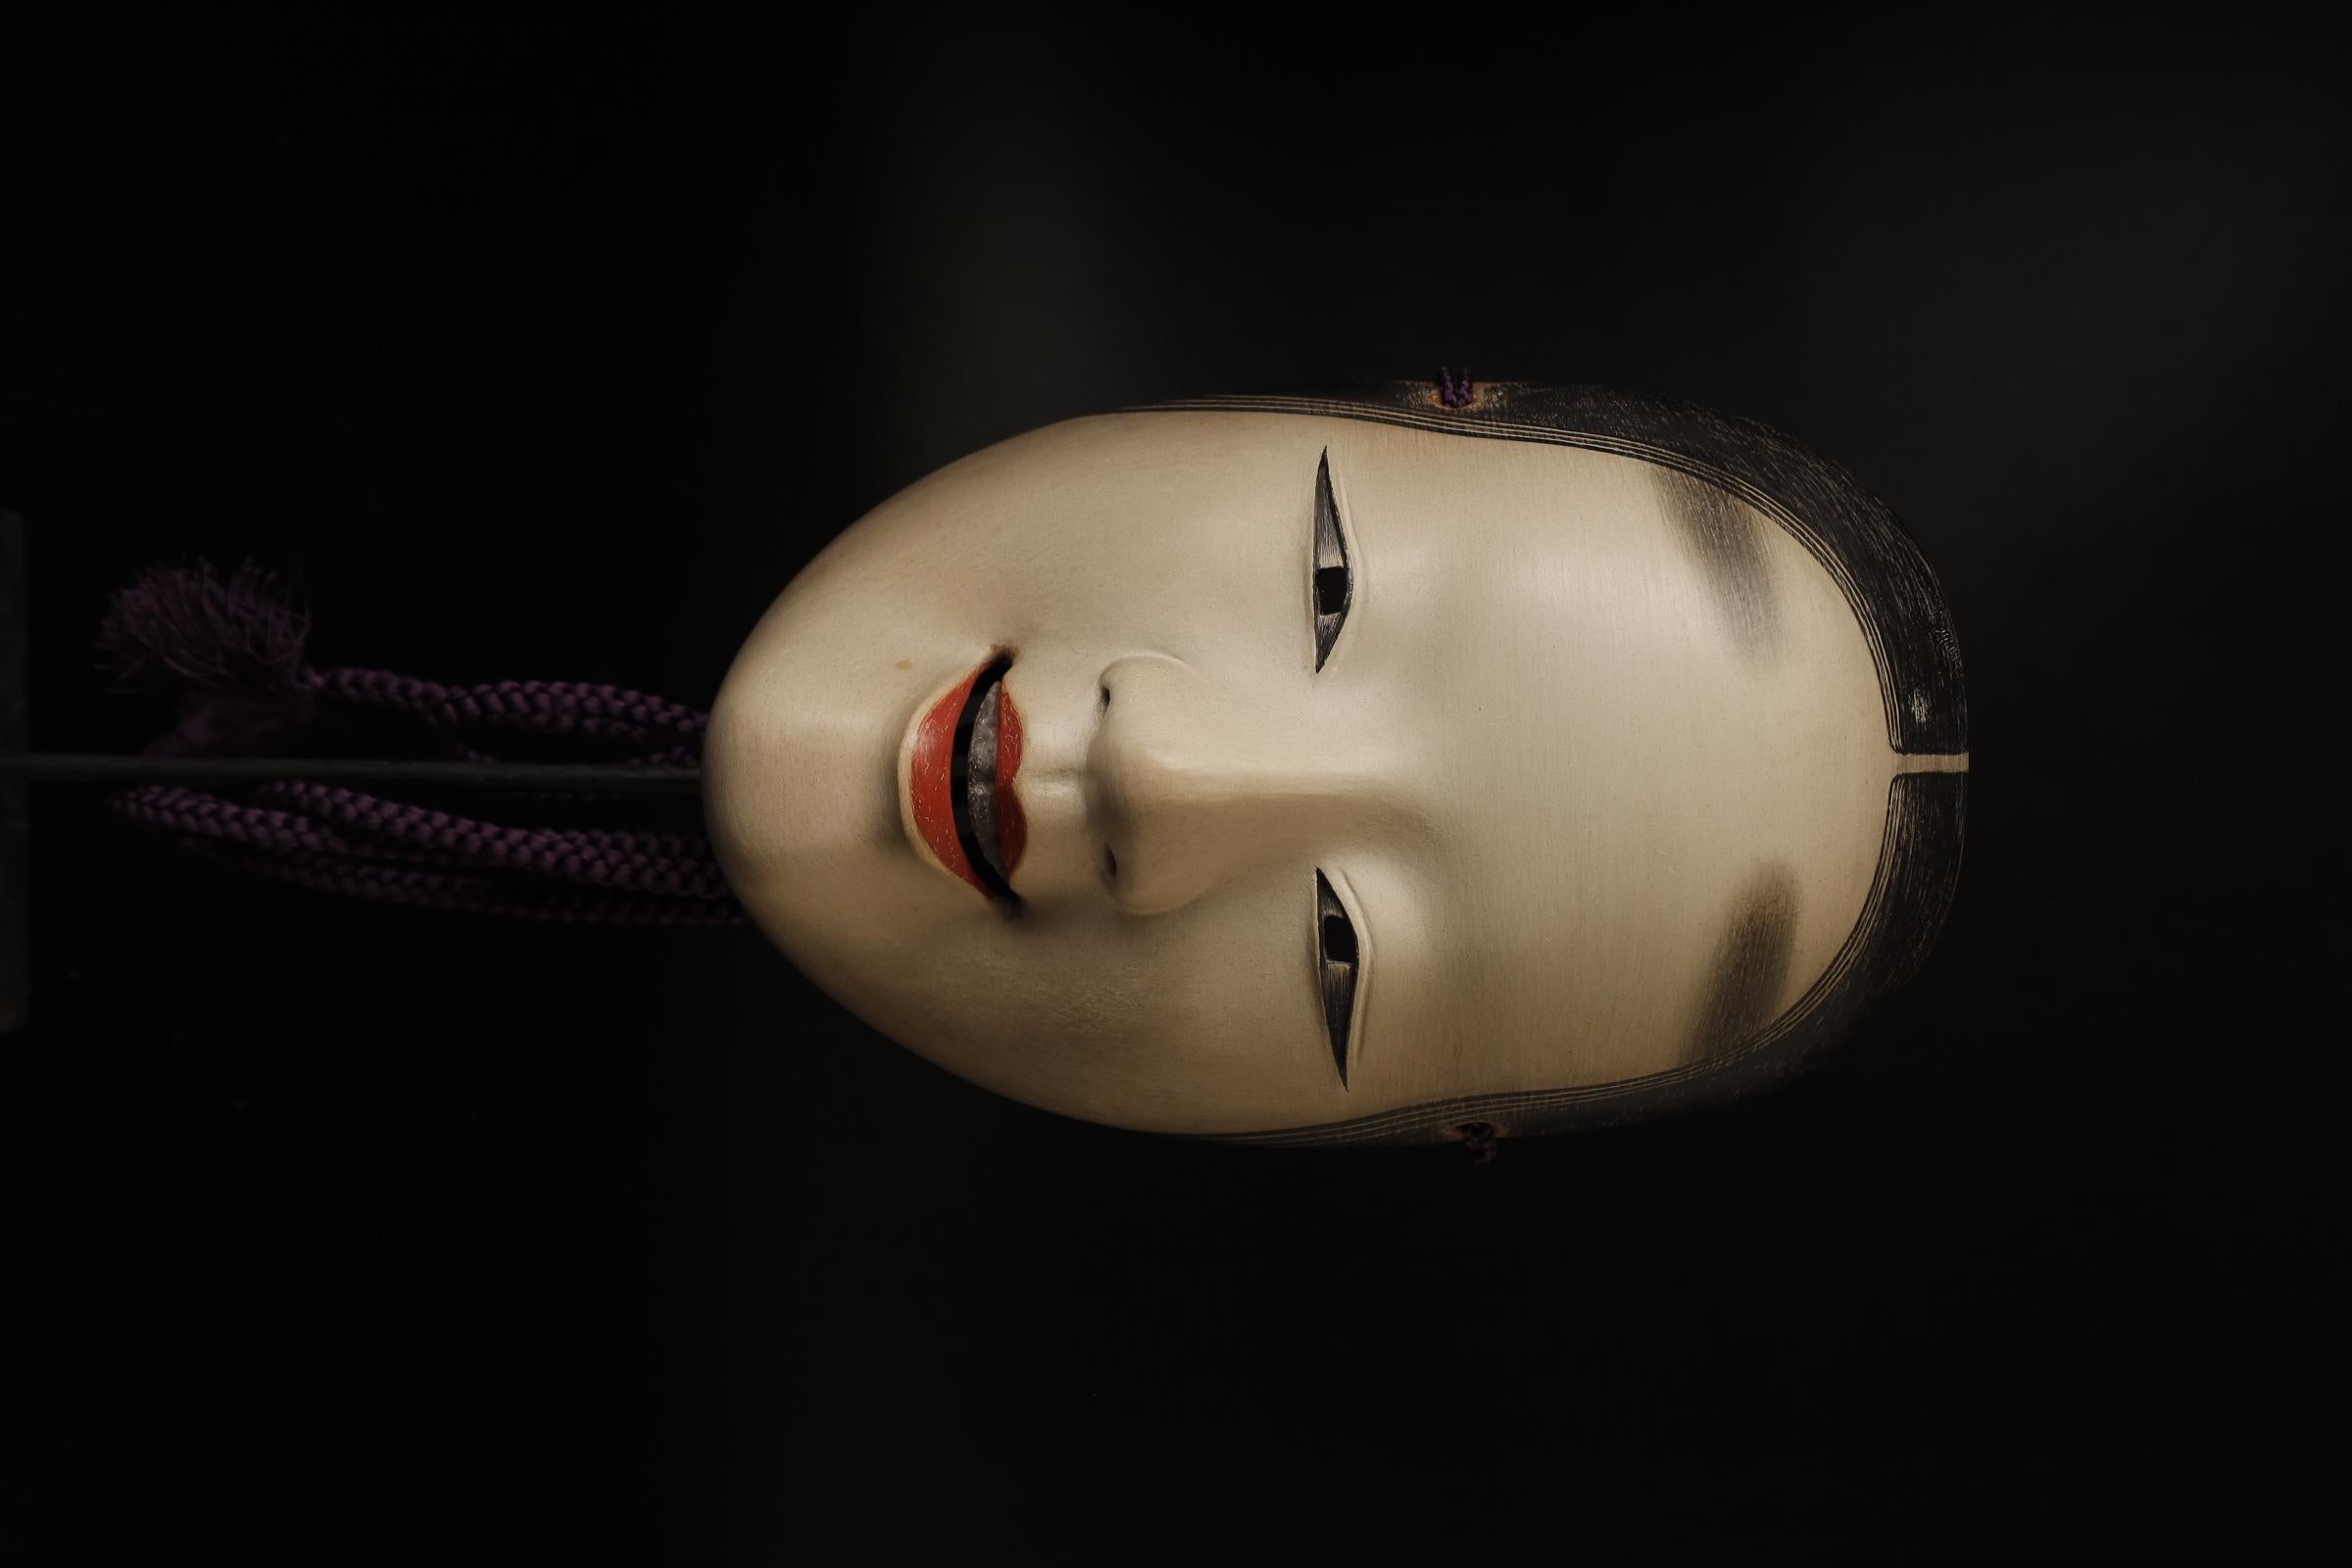 japanese mask woman